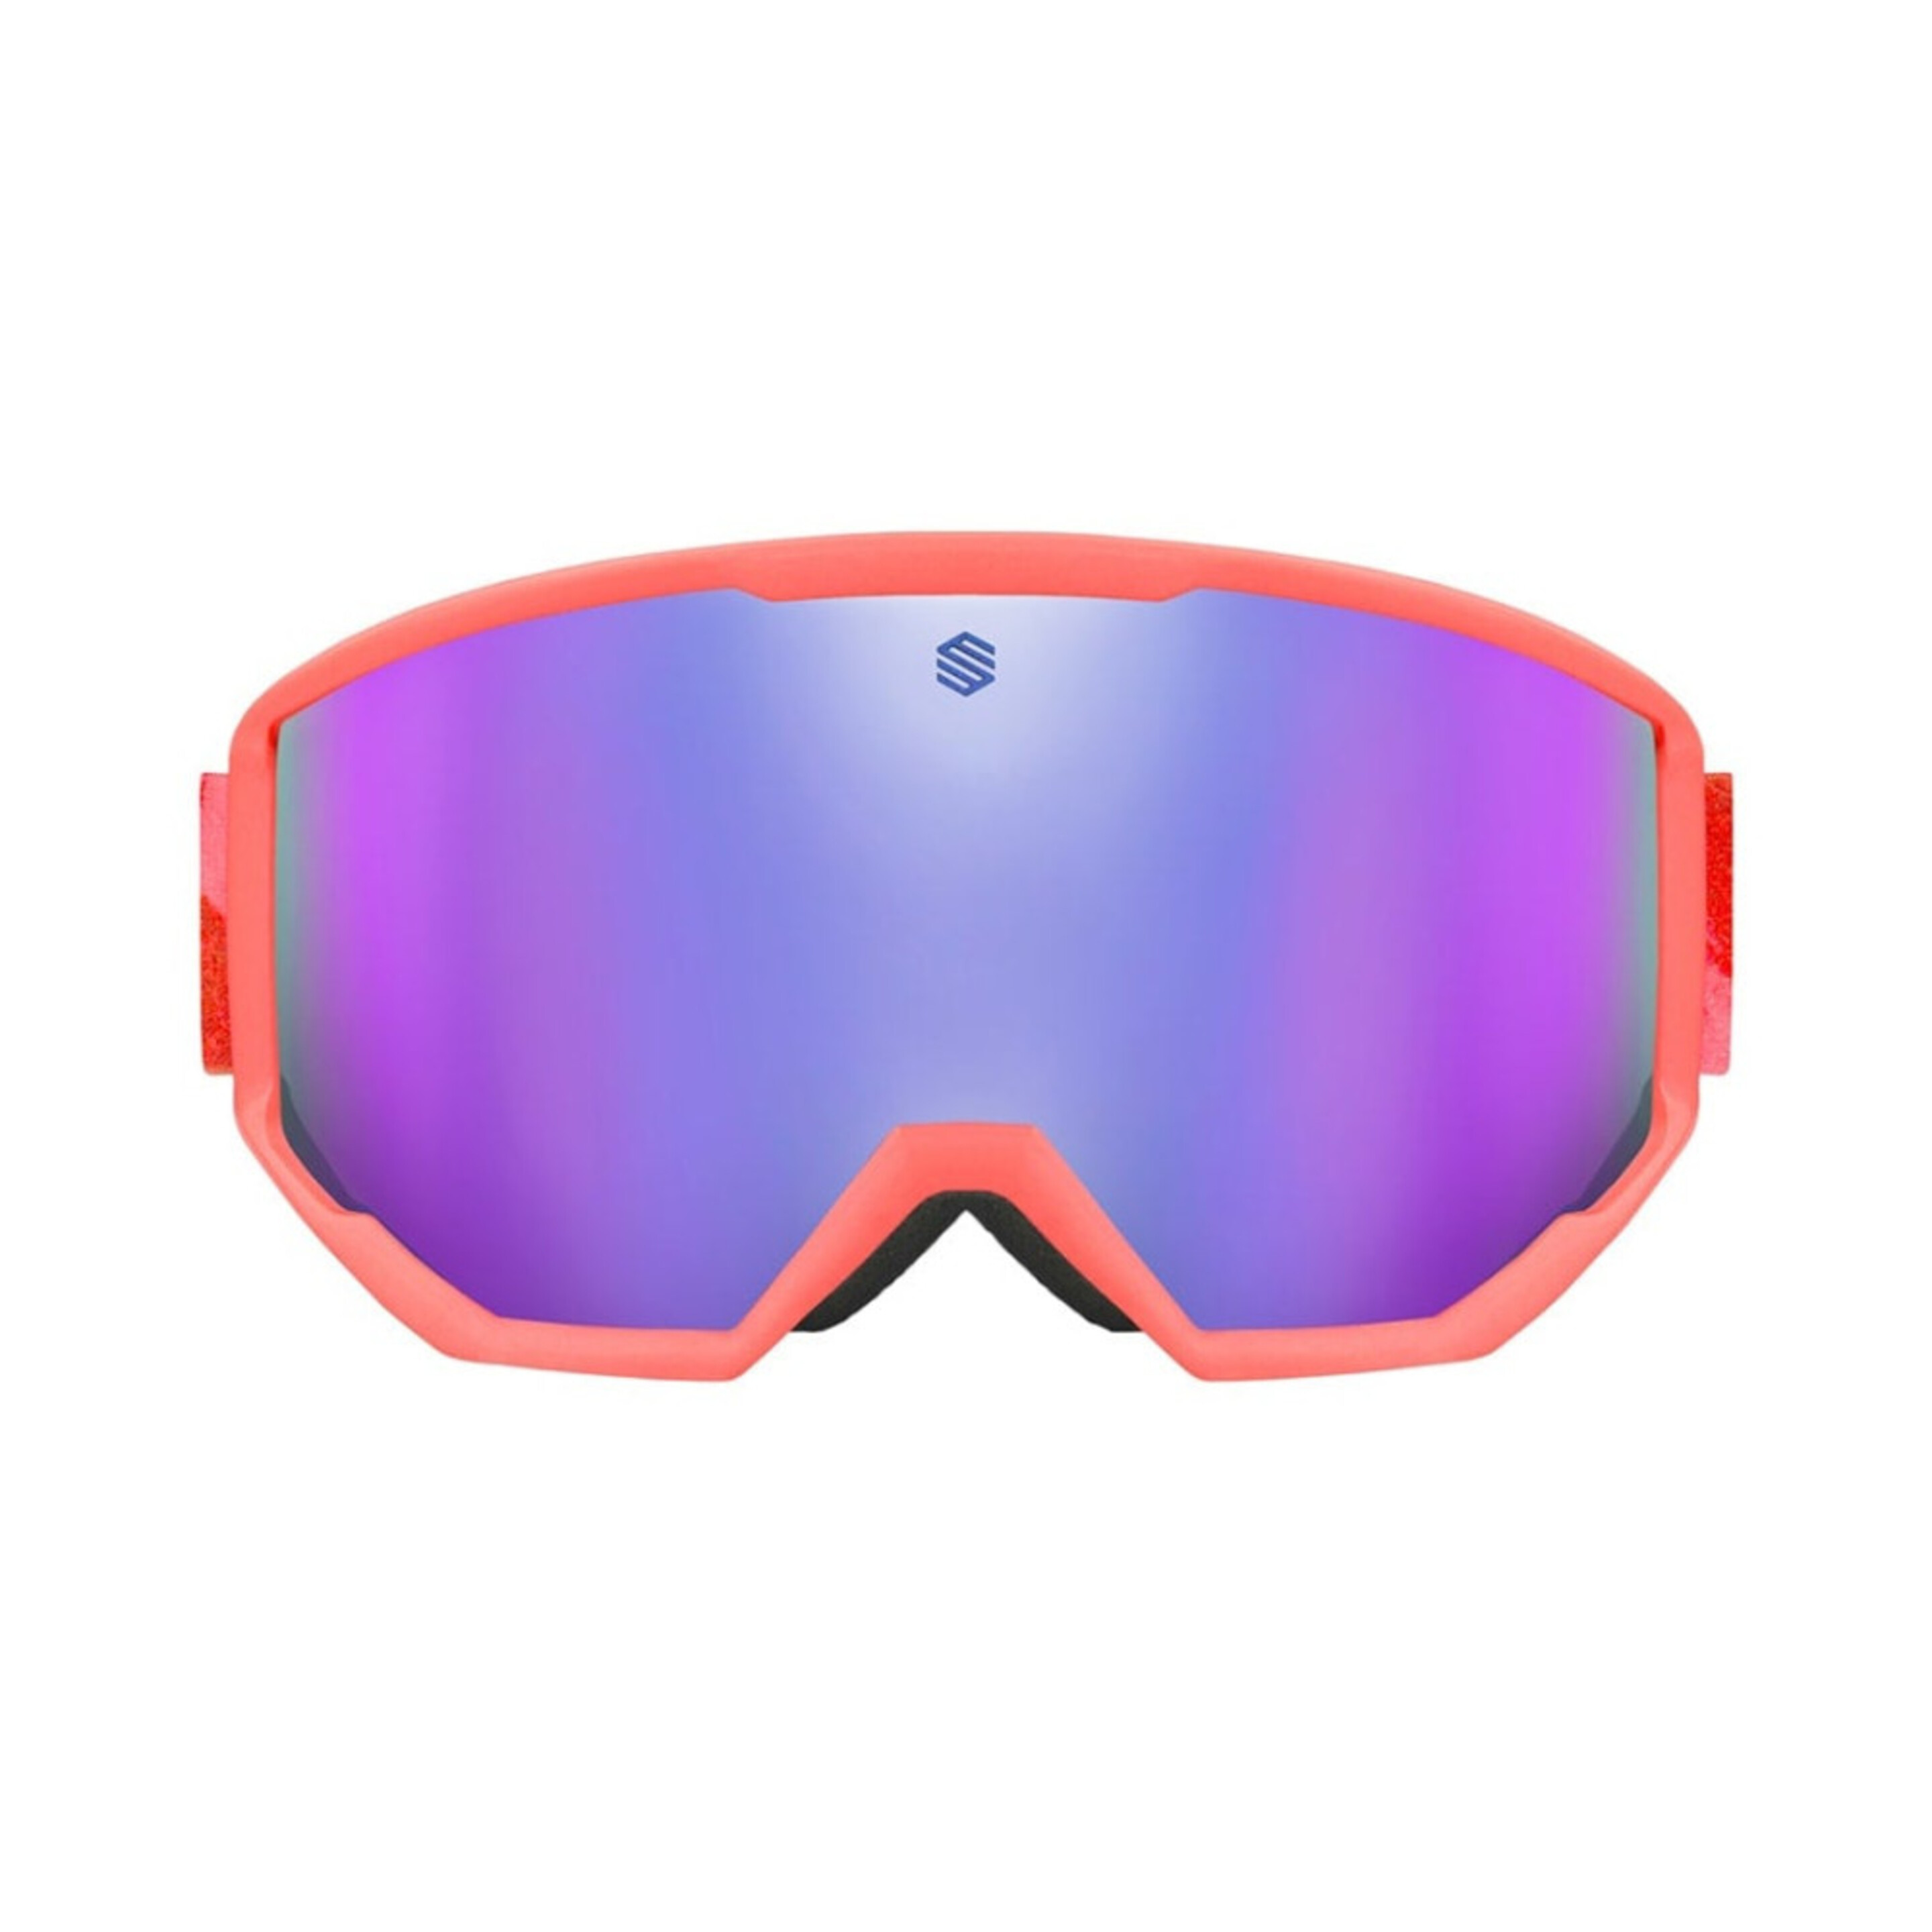 Gafas De Sol Para Esquí/snow Siroko G1 Canada